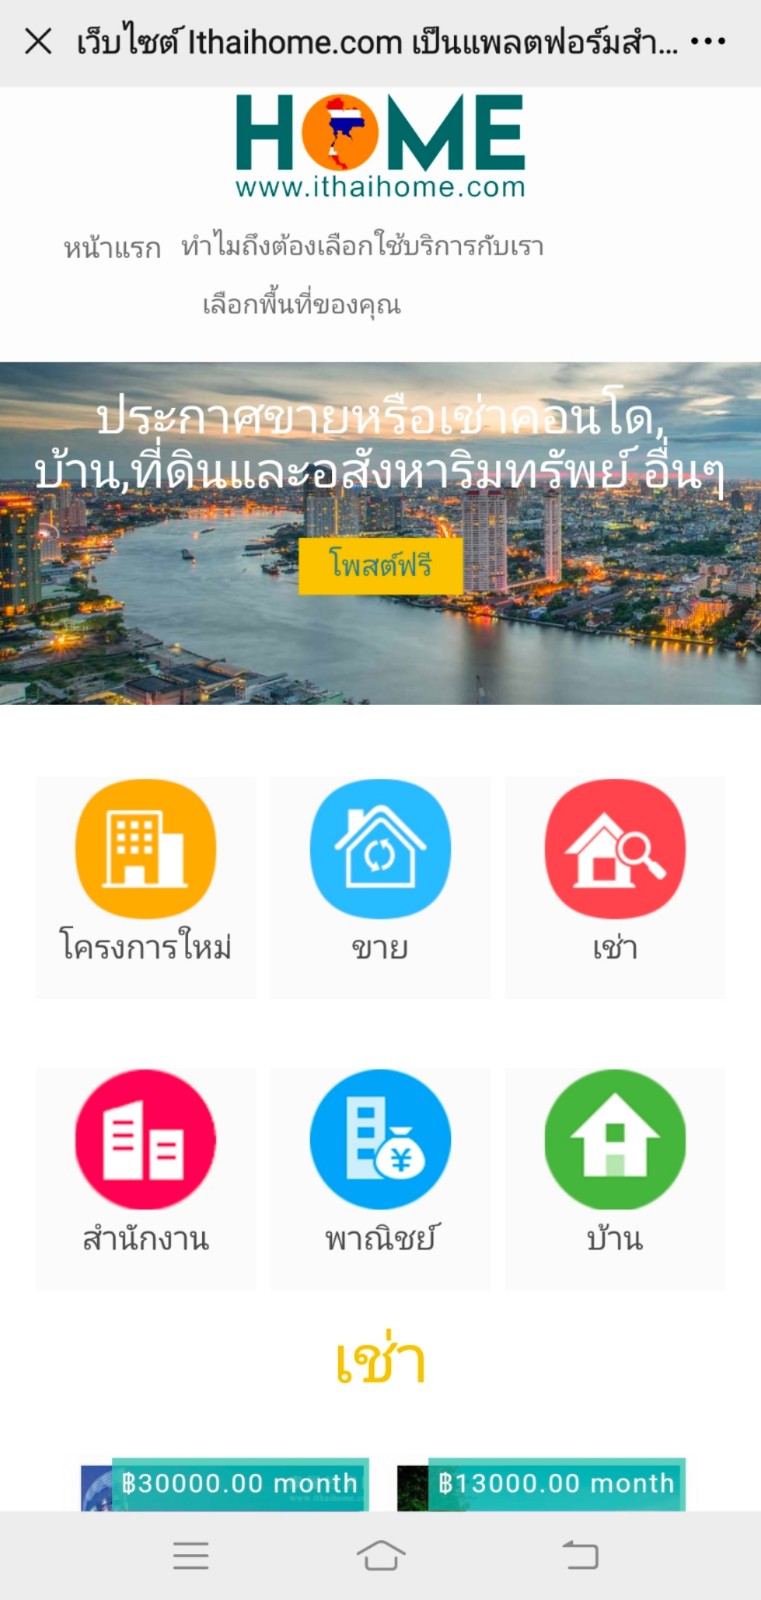 泰国好房网上线英、泰文版；更深入泰国本地化和国际化房产业务！